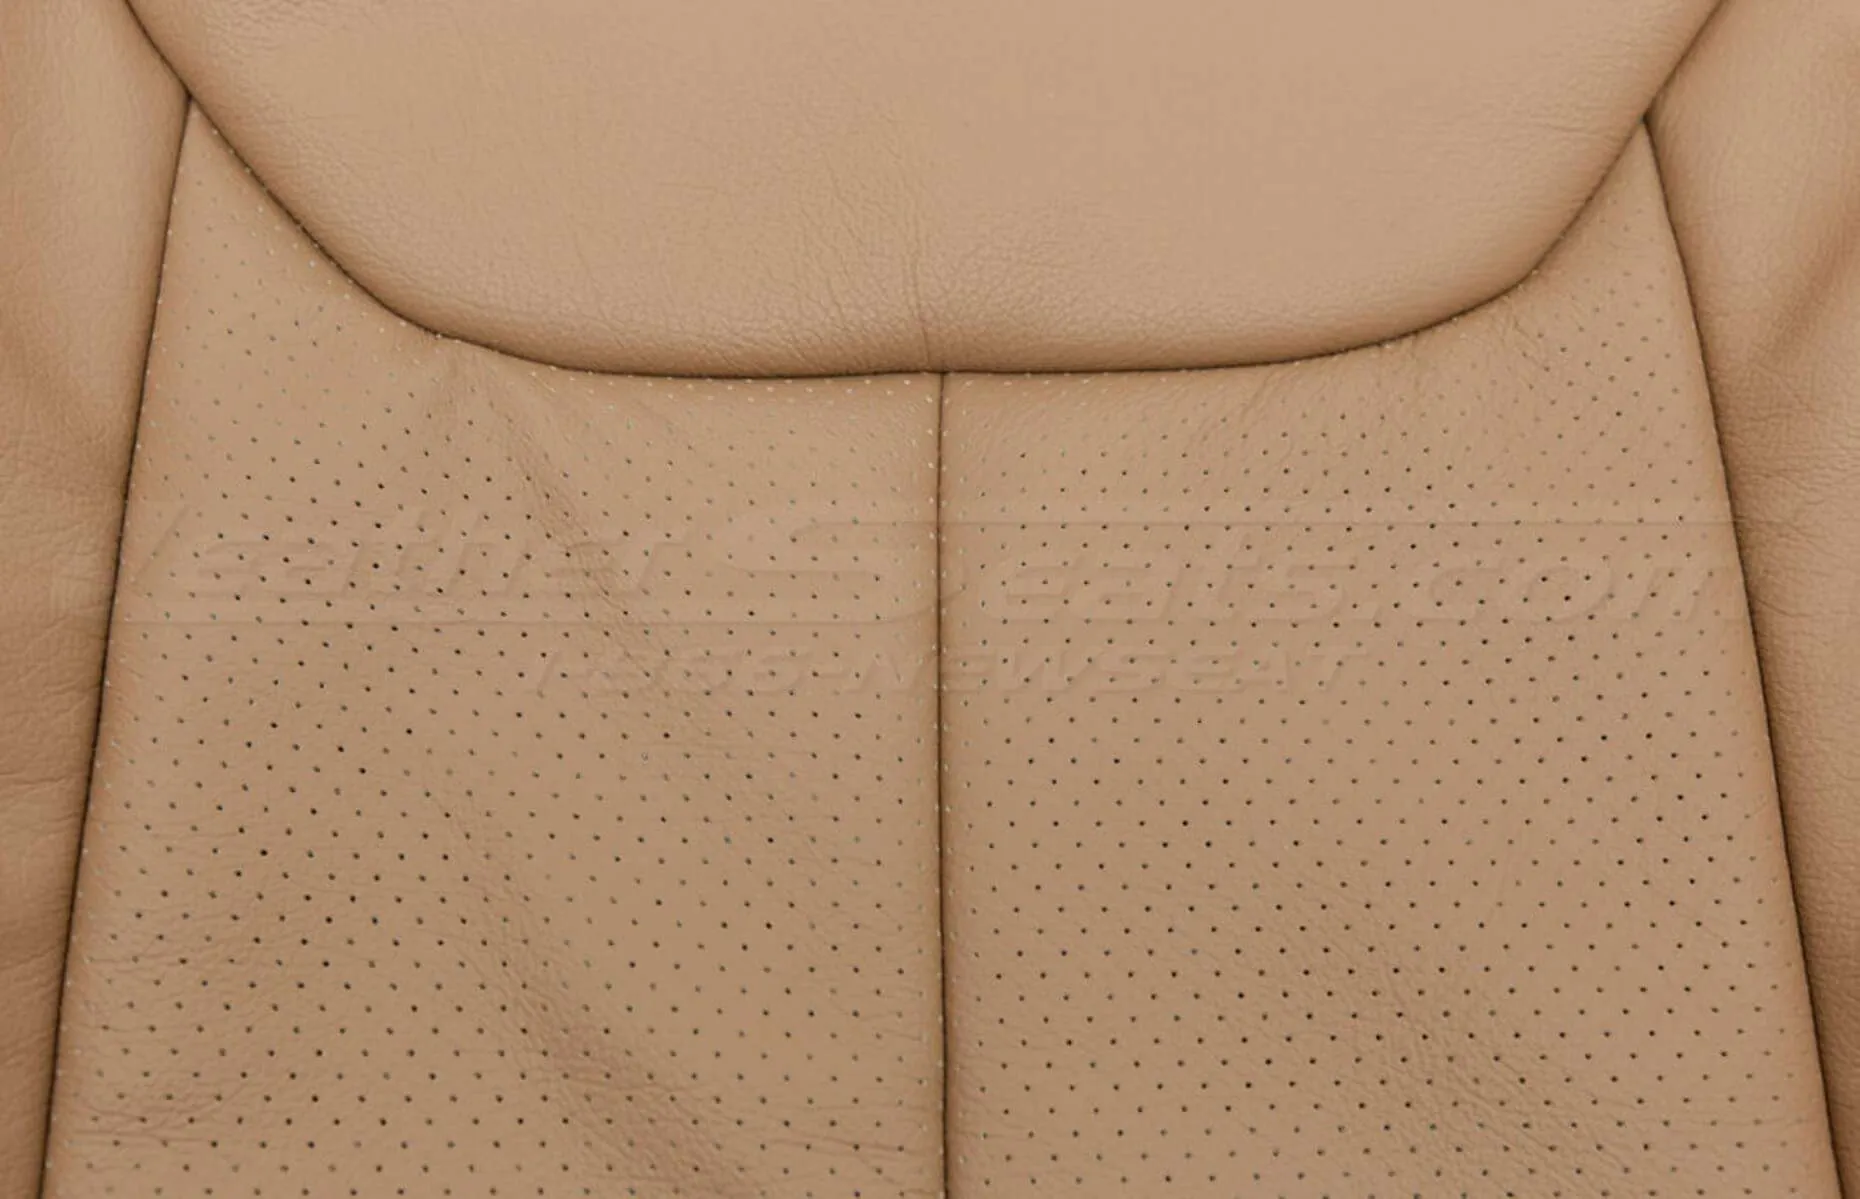 Jeep Wrangler leather kit - Black/Teak - Backrest perforation close-up